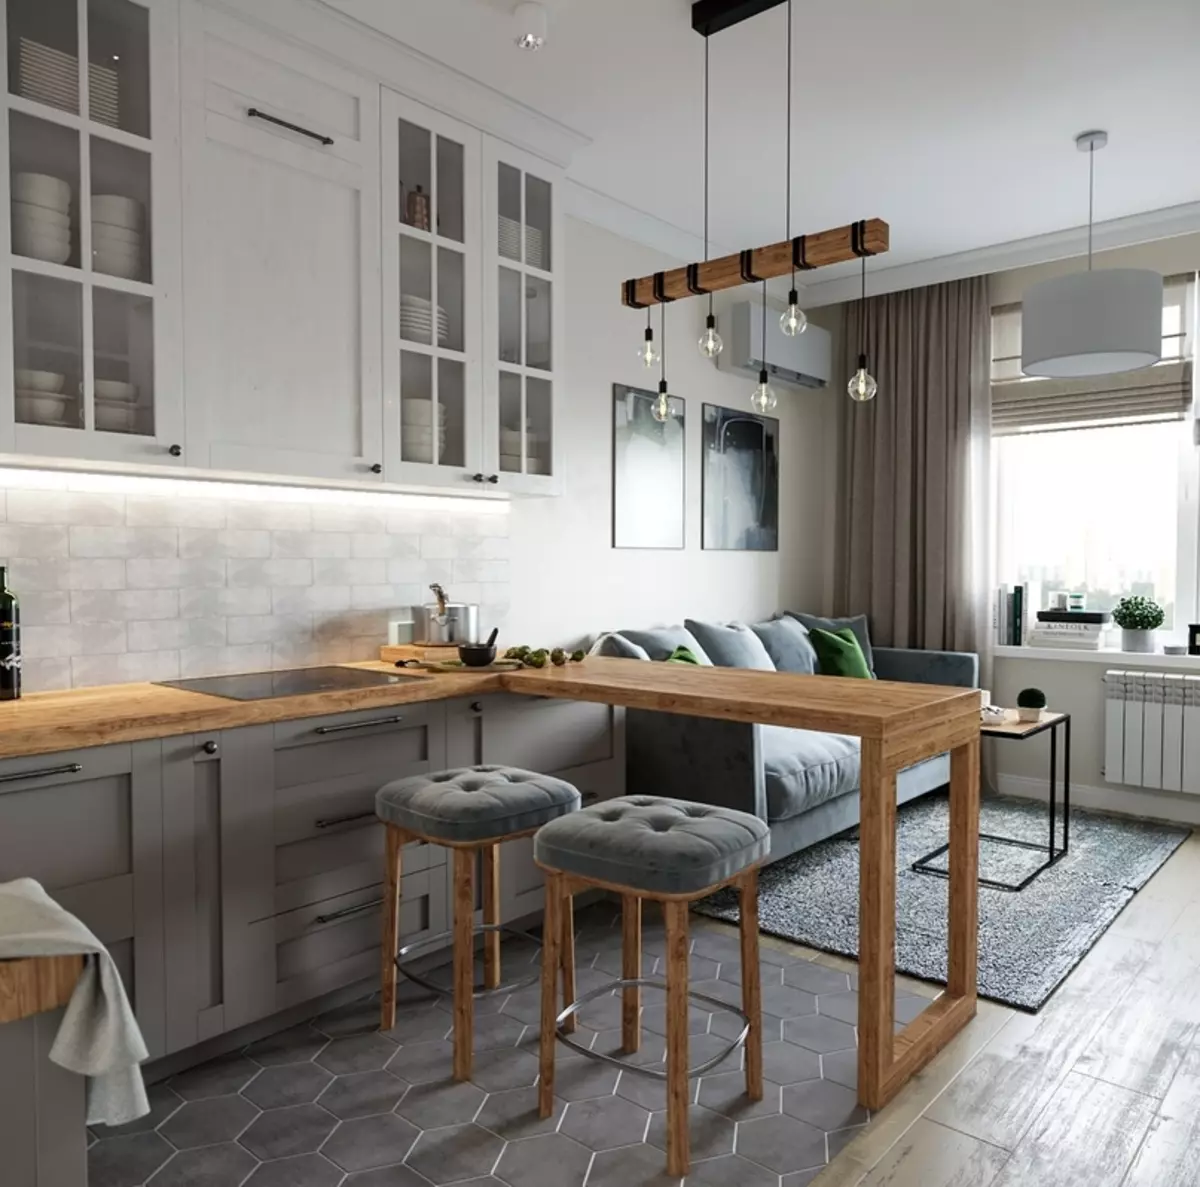 Kjøkken-stue i lyse farger (40 bilder): Interiørdesign av kombinerte rom i hvite og pastellfarger med et hovedkort. Eksempler i moderne og klassiske stiler 9538_31